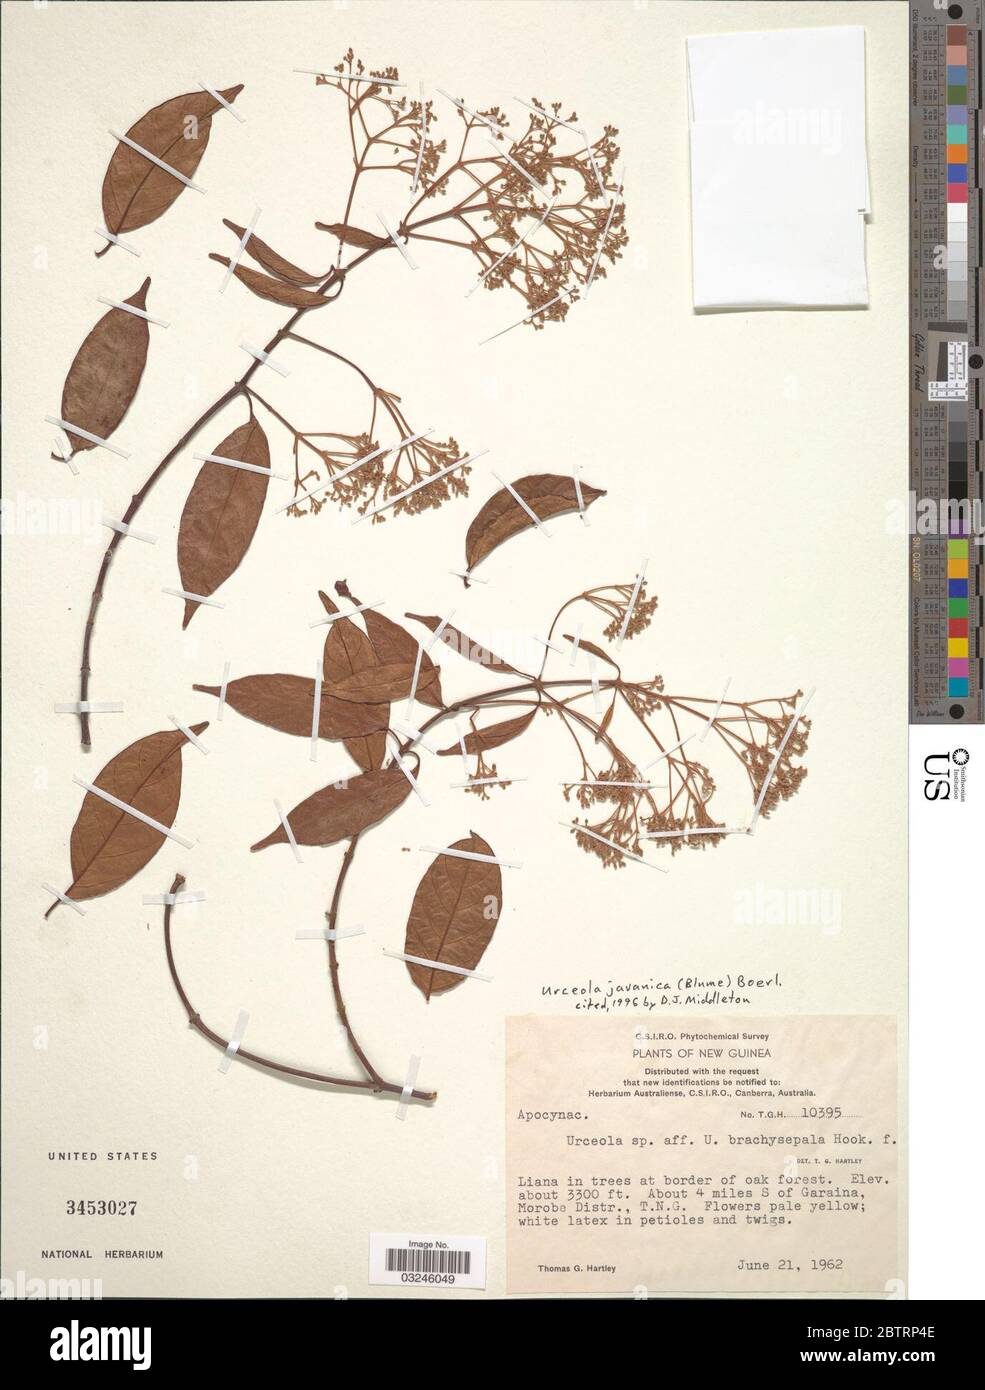 Urceola javanica Blume Boerl. Stock Photo